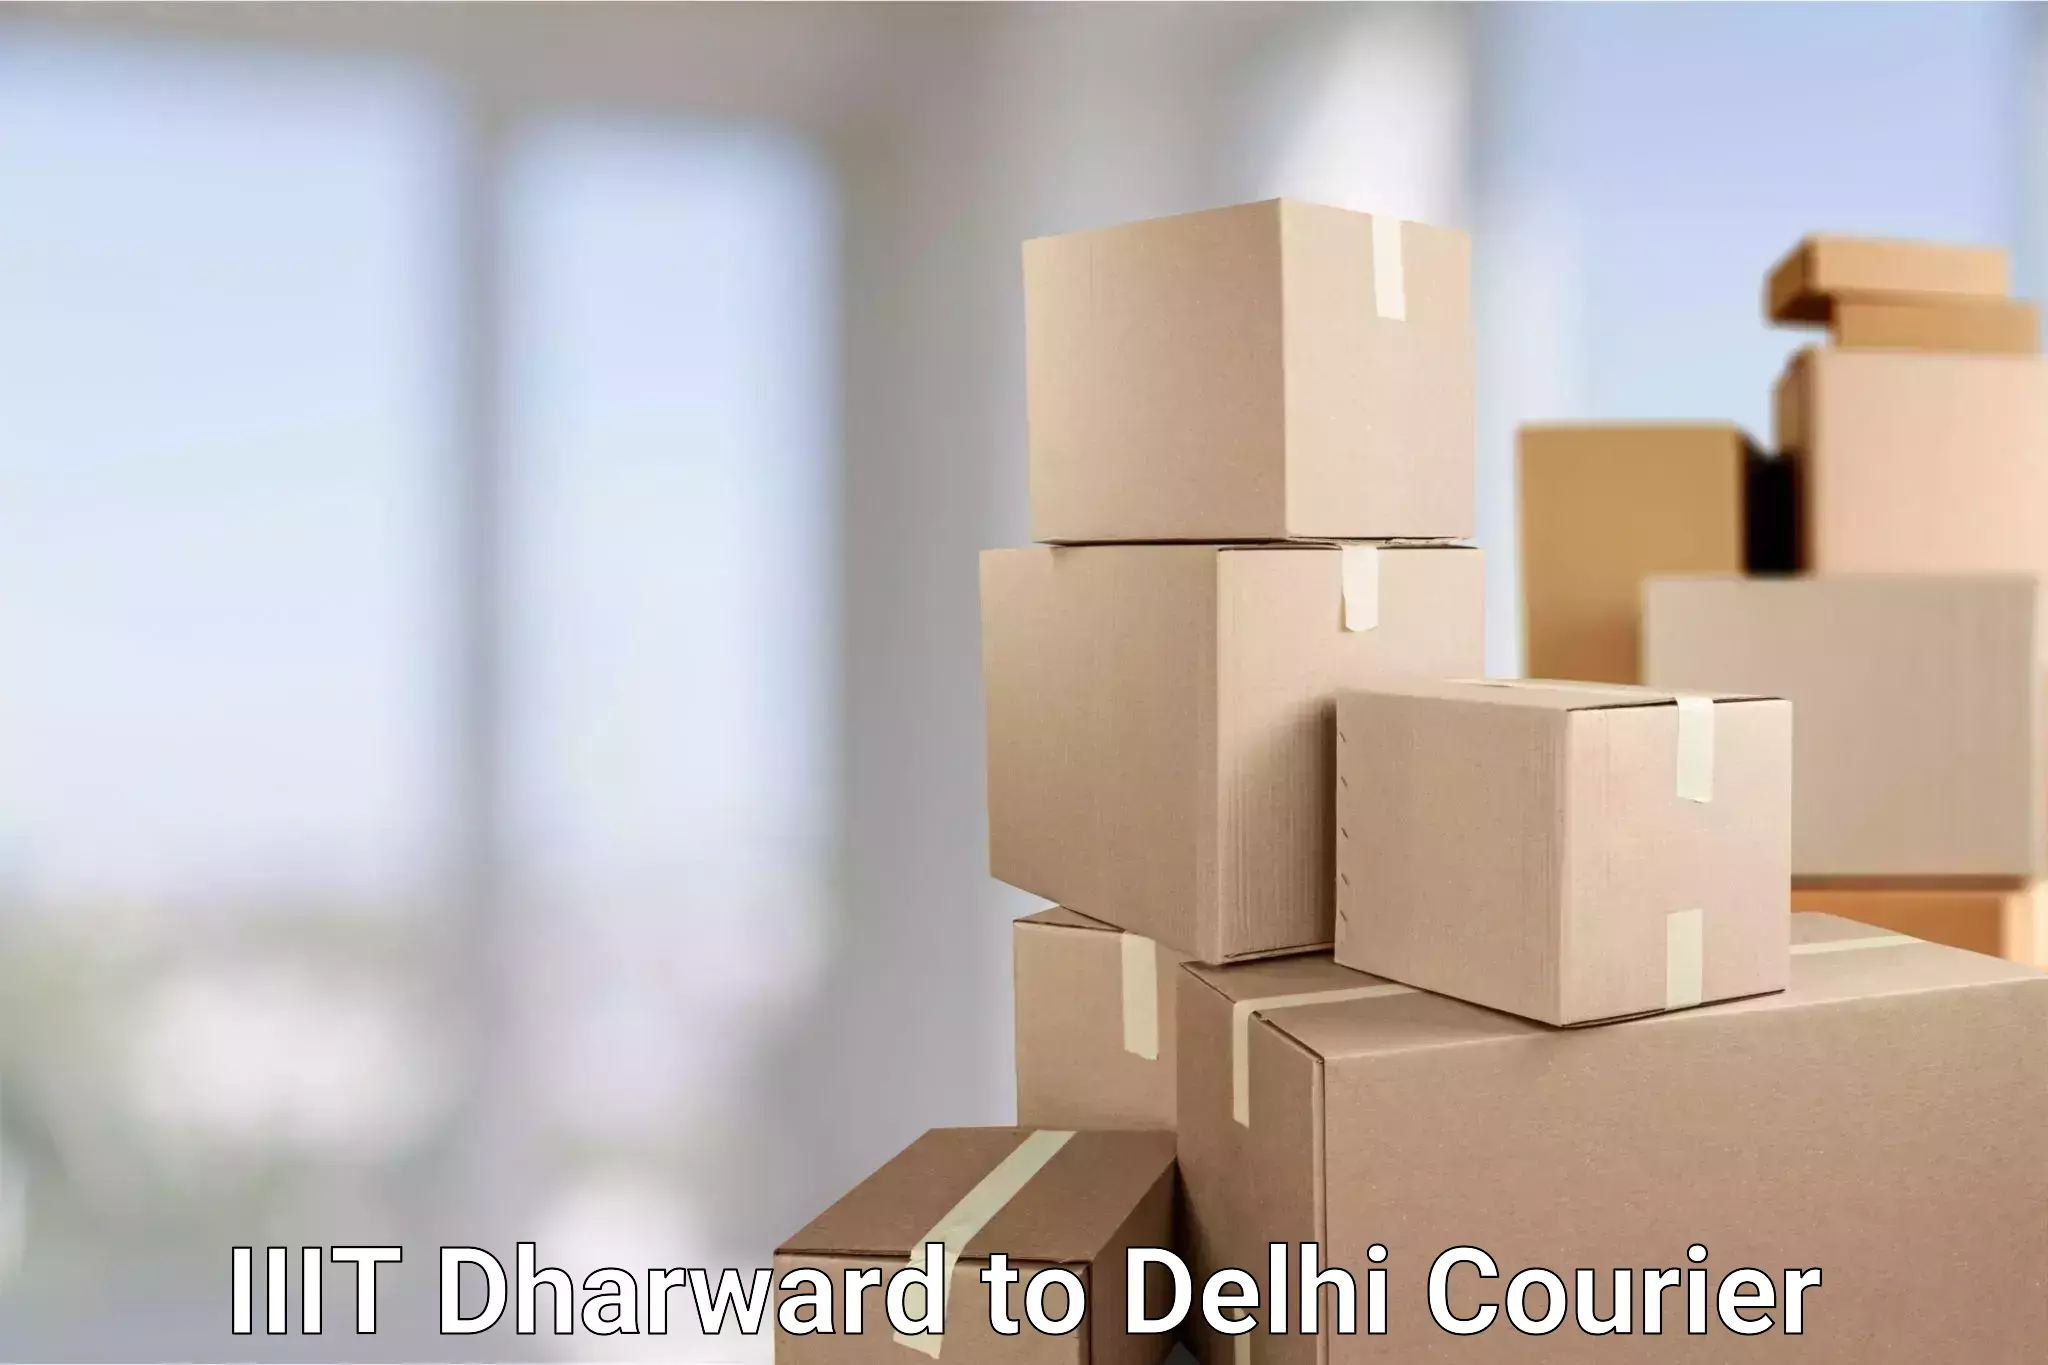 Urgent courier needs IIIT Dharward to Lodhi Road